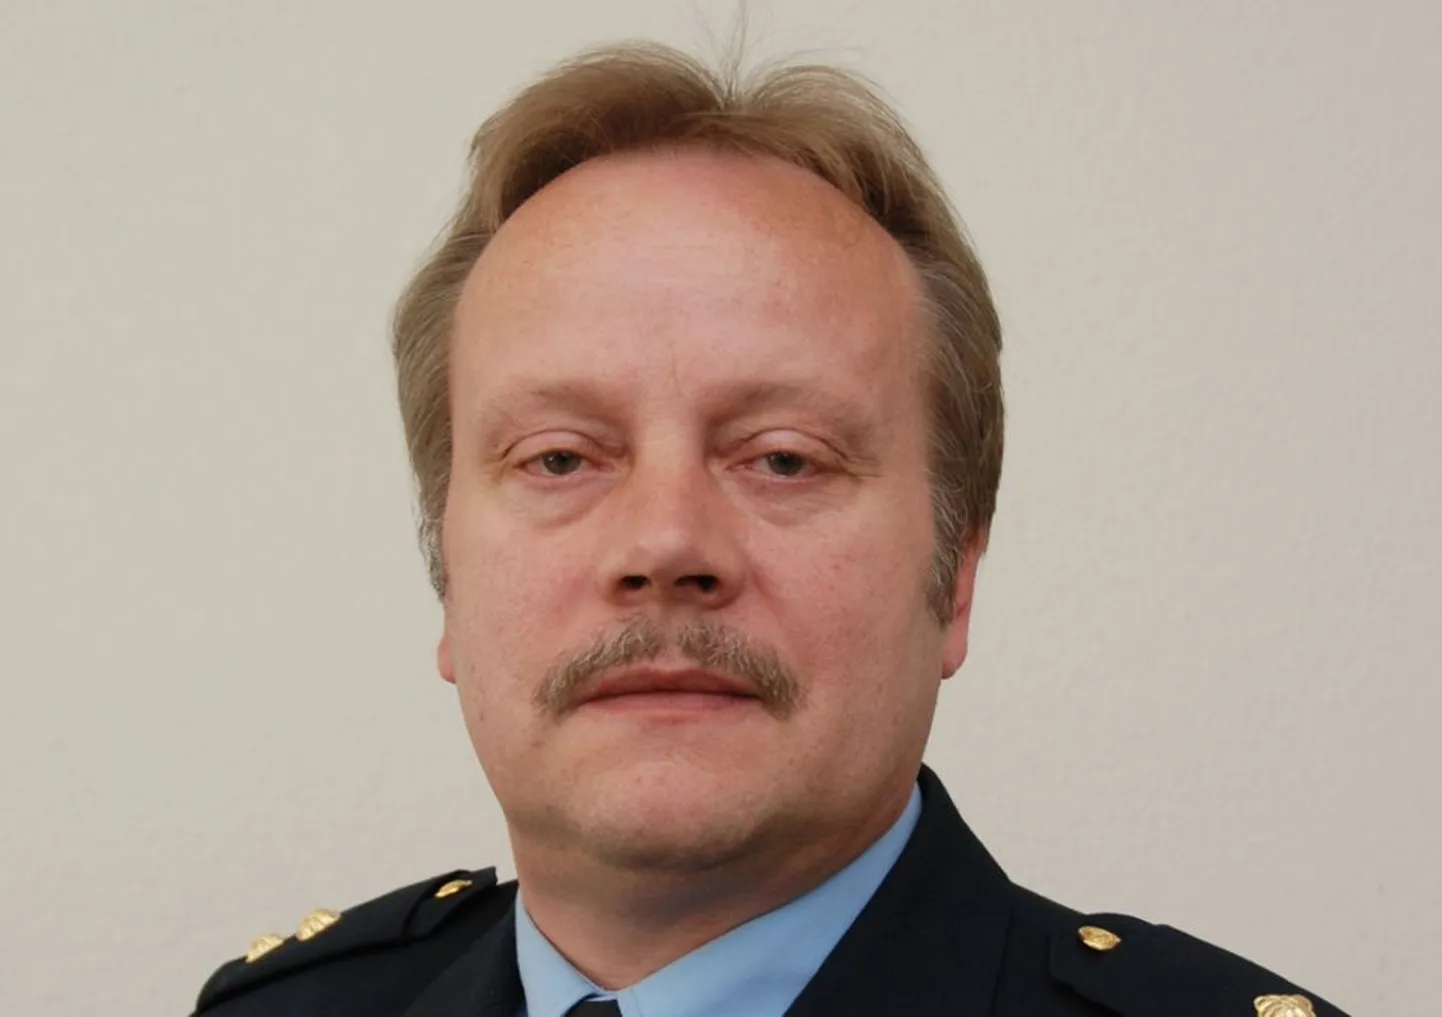 Pärnu politseiosakonna korrakaitsetalituse
komissar Artur Kase.